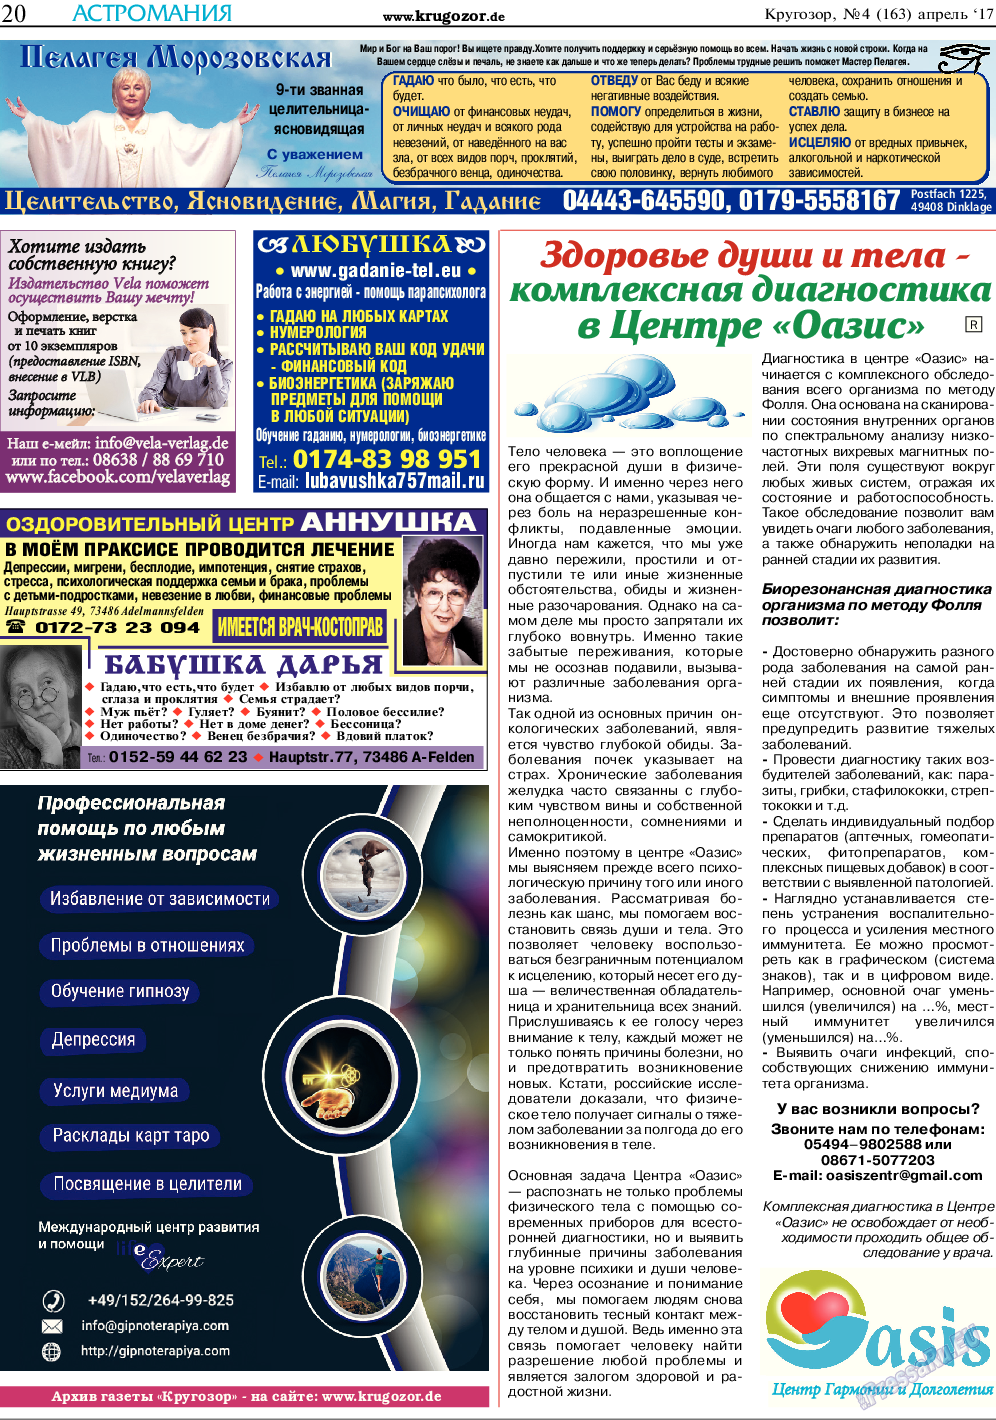 Кругозор (газета). 2017 год, номер 4, стр. 20